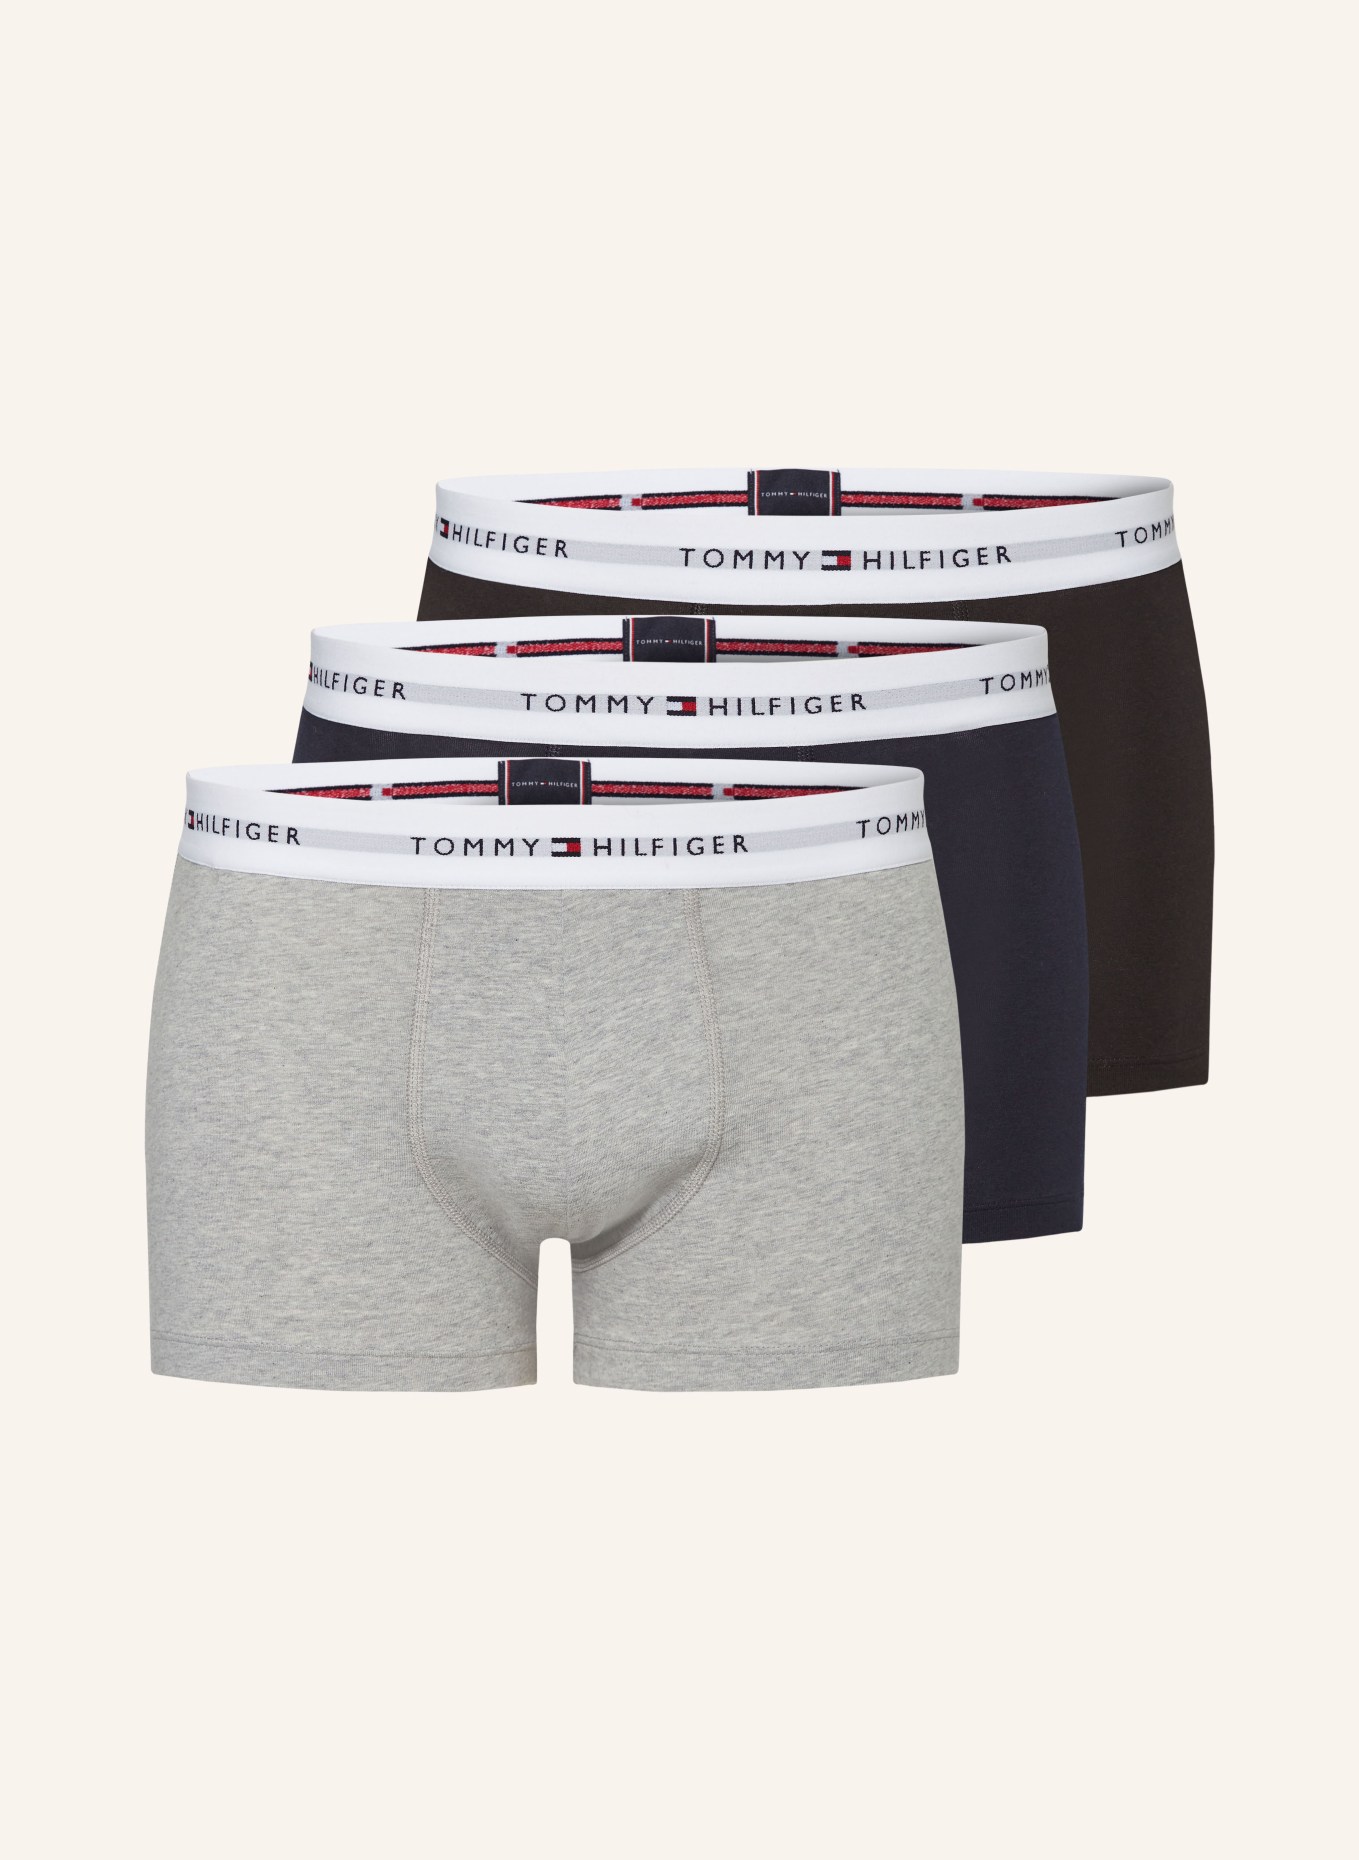 TOMMY HILFIGER 3-pack boxer shorts, Color: BLACK/ LIGHT GRAY (Image 1)